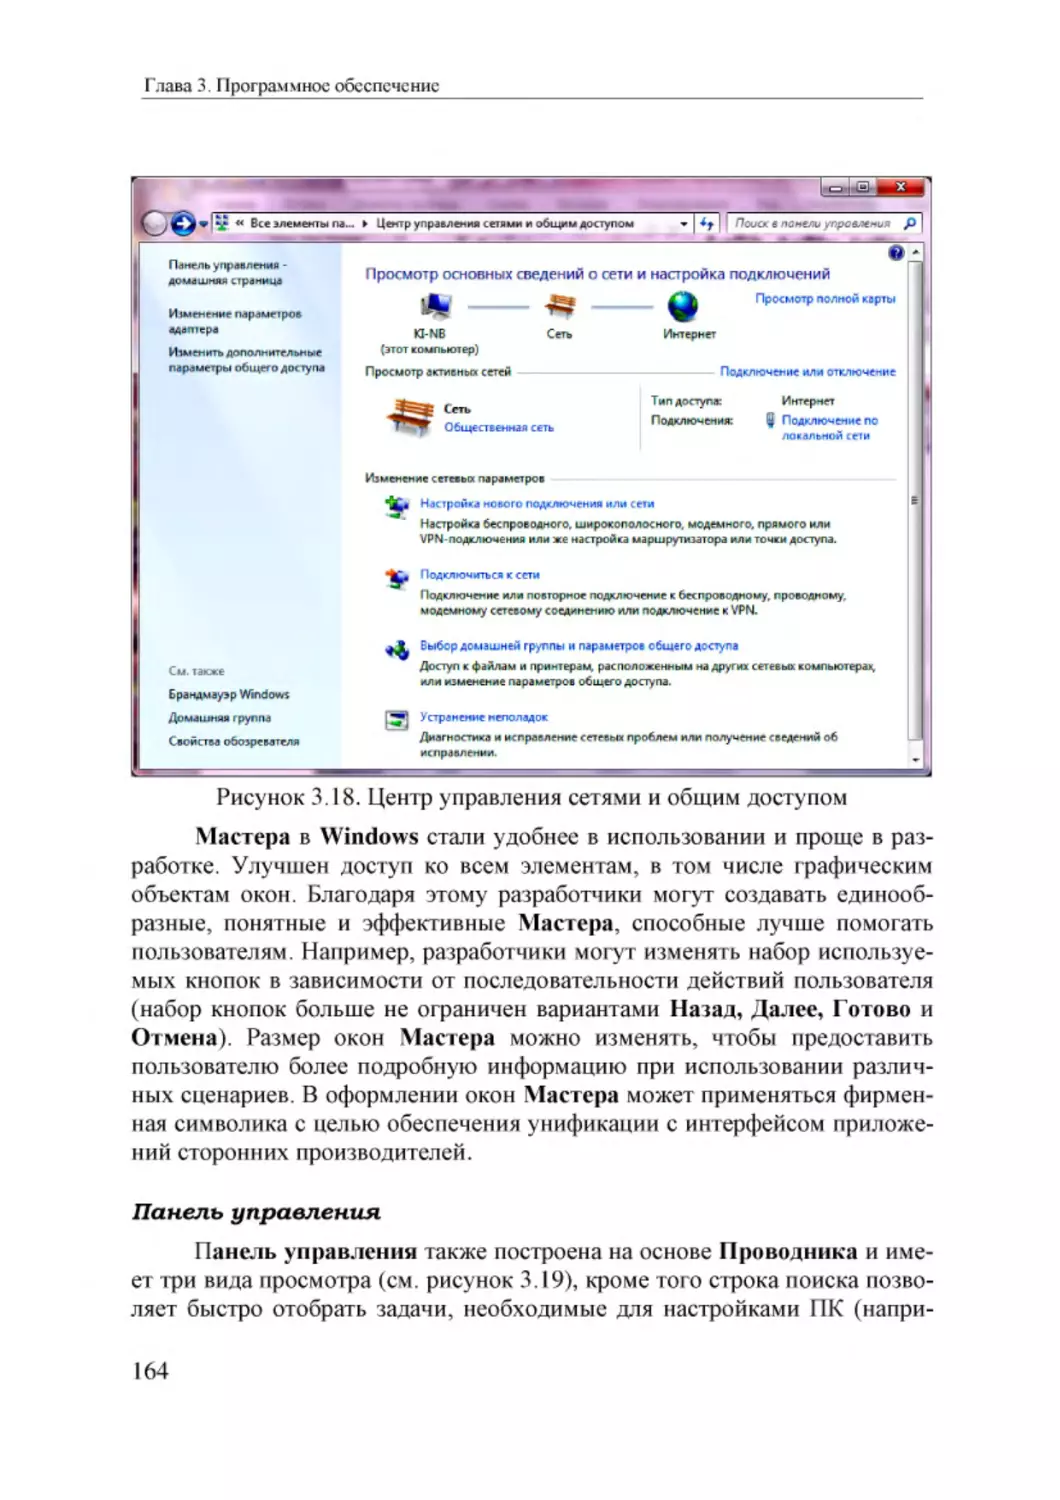 Informatika_Uchebnik_dlya_vuzov_2010 164